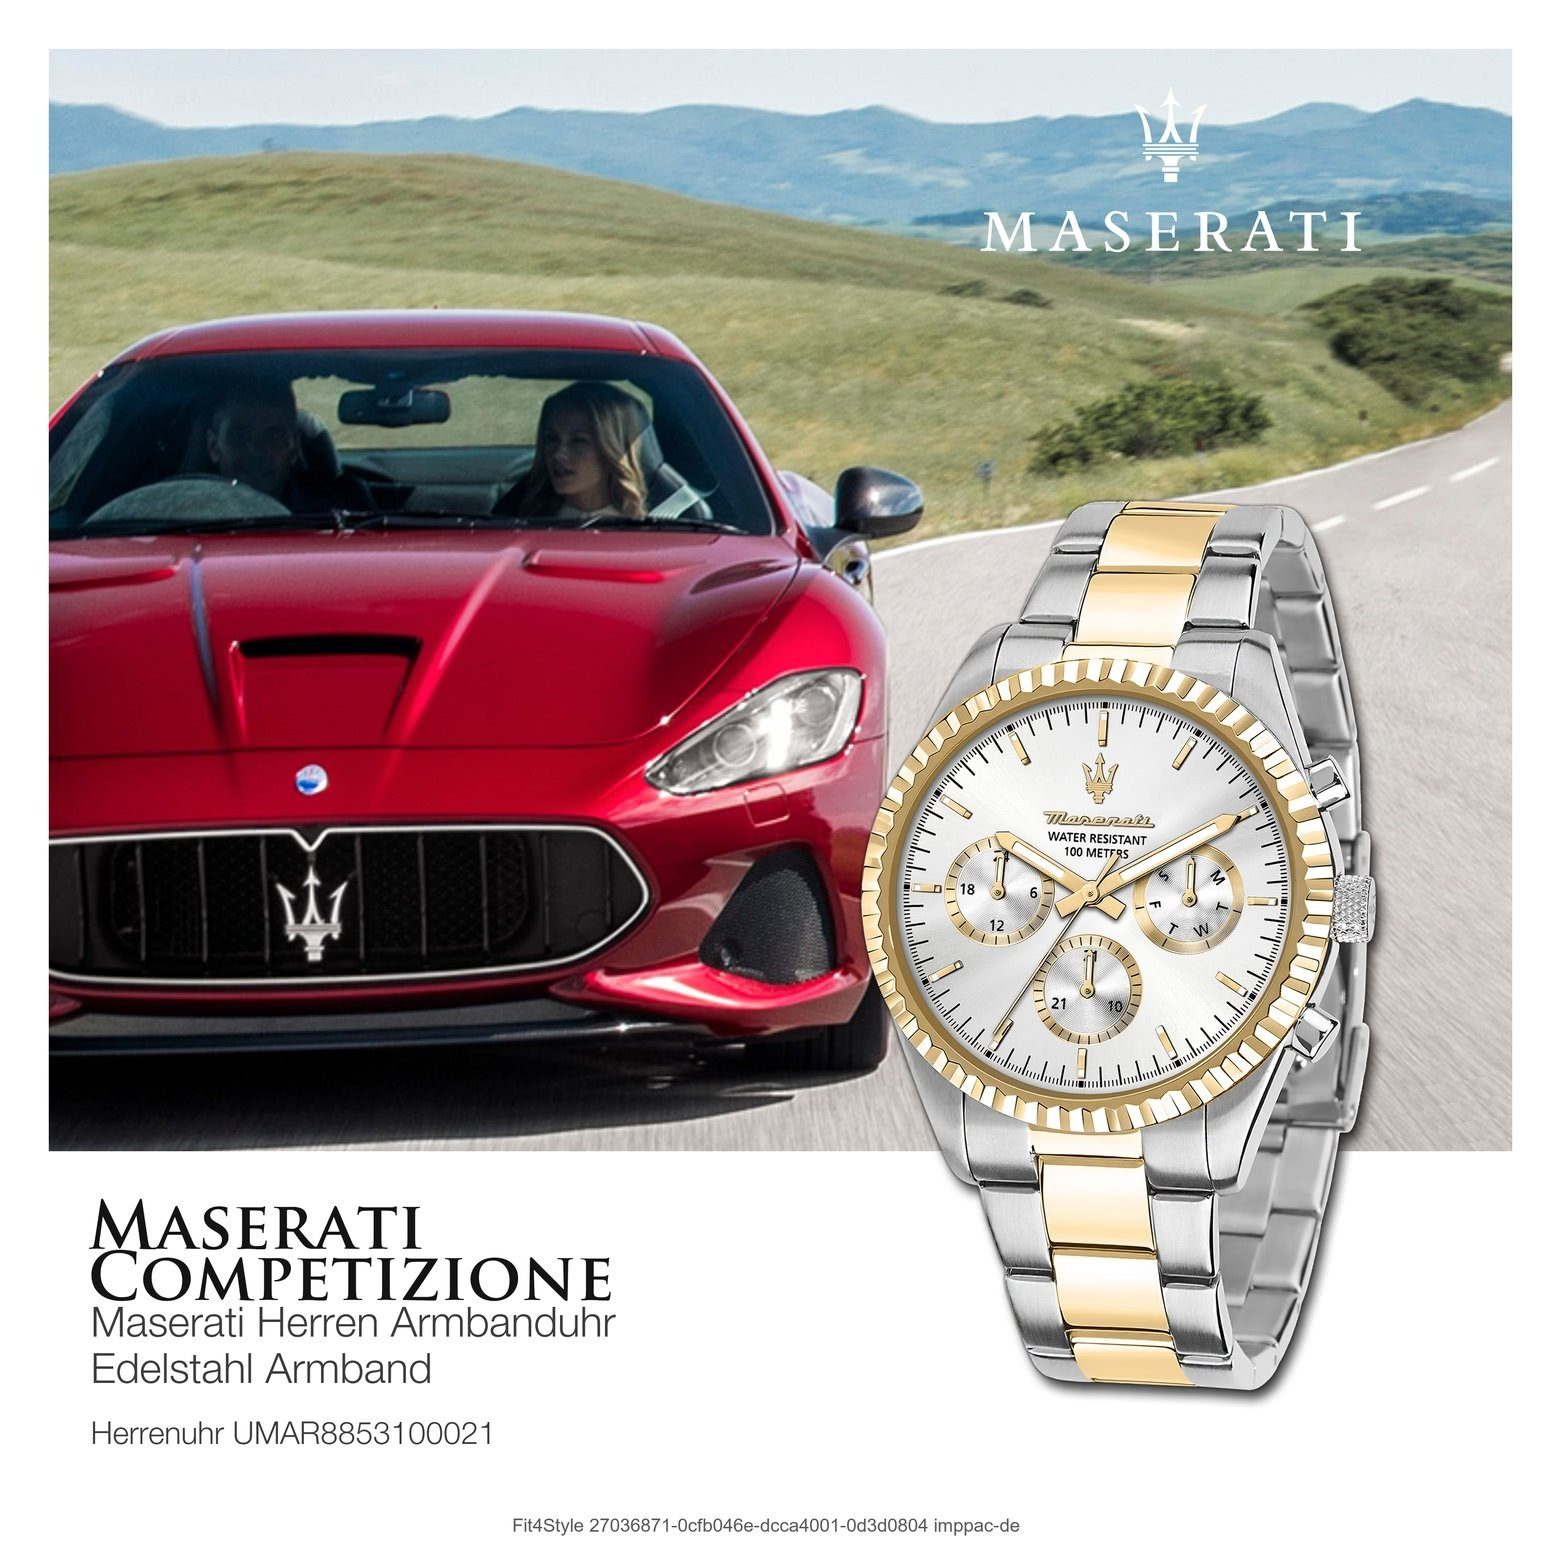 Edelstahlarmband, weiß Made-In (ca. 51,5x43mm) Herrenuhr Italy groß MASERATI rund, gold, Maserati COMPETIZIONE, Multifunktionsuhr Herrenuhr